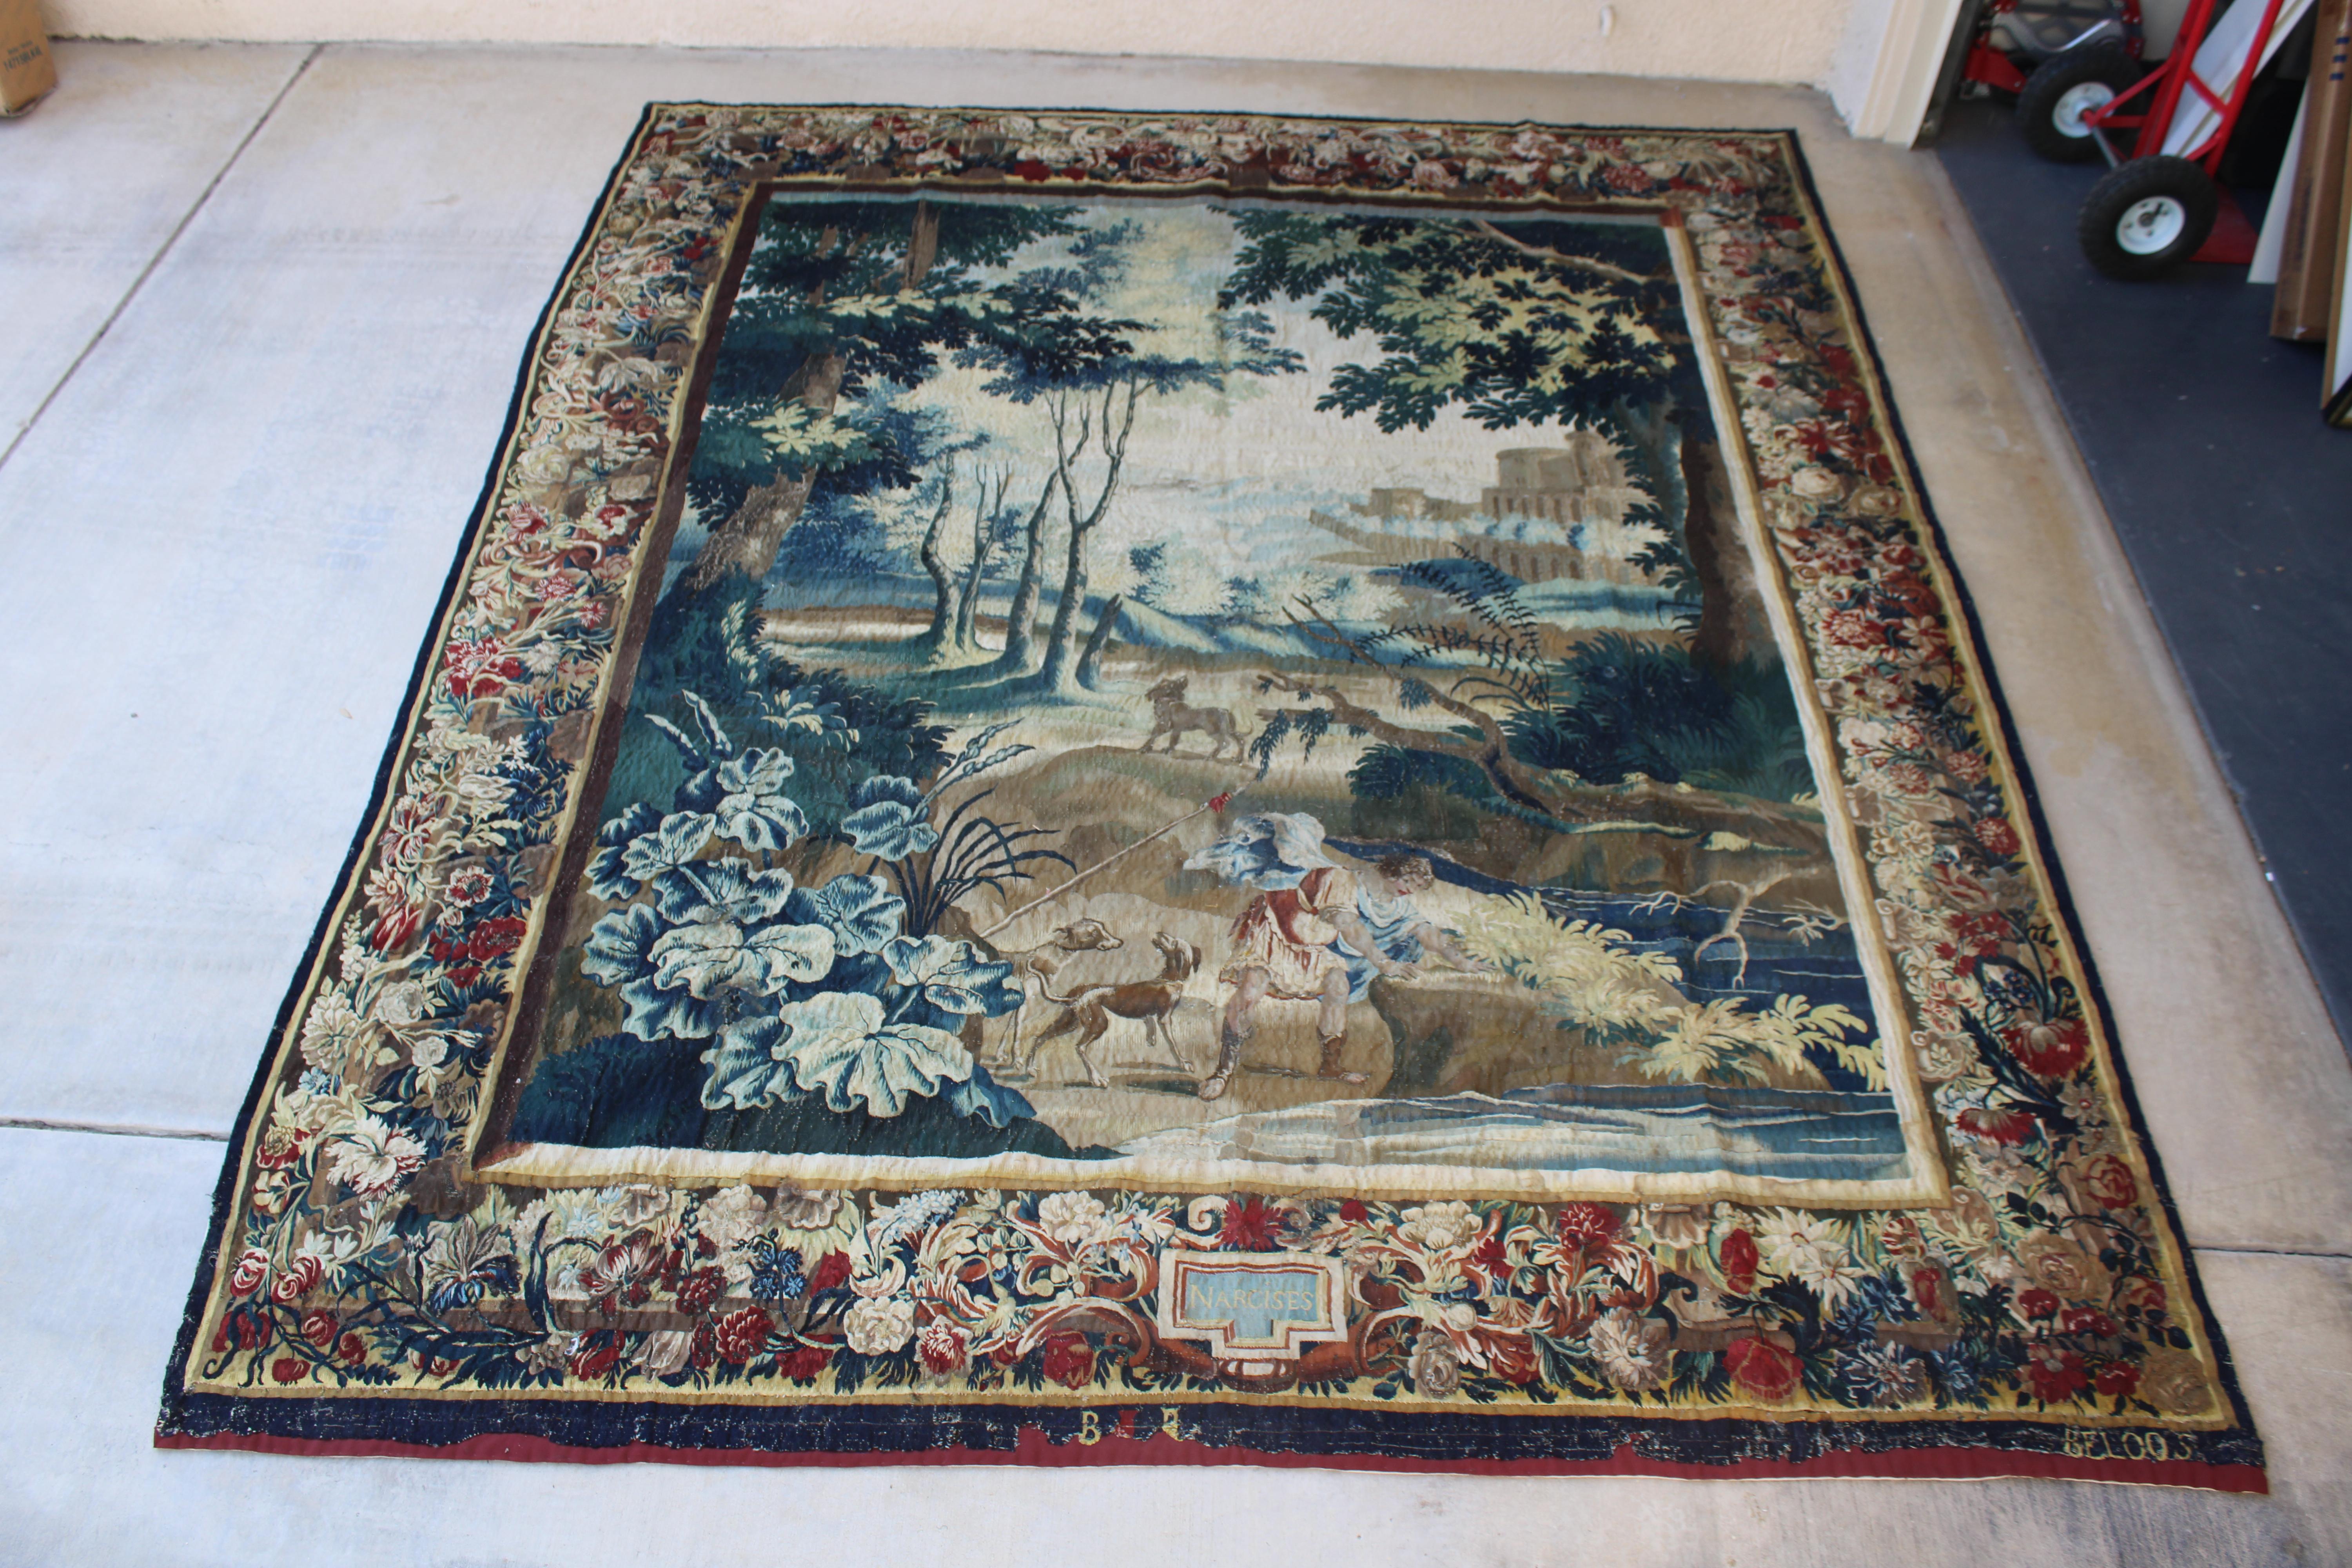 Verdure-Wandteppich aus dem 18. Jahrhundert mit einer Größe von etwa 8 x 10 Fuß. Ursprünglich wurden sie an den französischen Höfen in den 1600er Jahren sehr beliebt.  Dieses Exemplar aus dem 18. Jahrhundert hat eine beeindruckende Farbskala mit